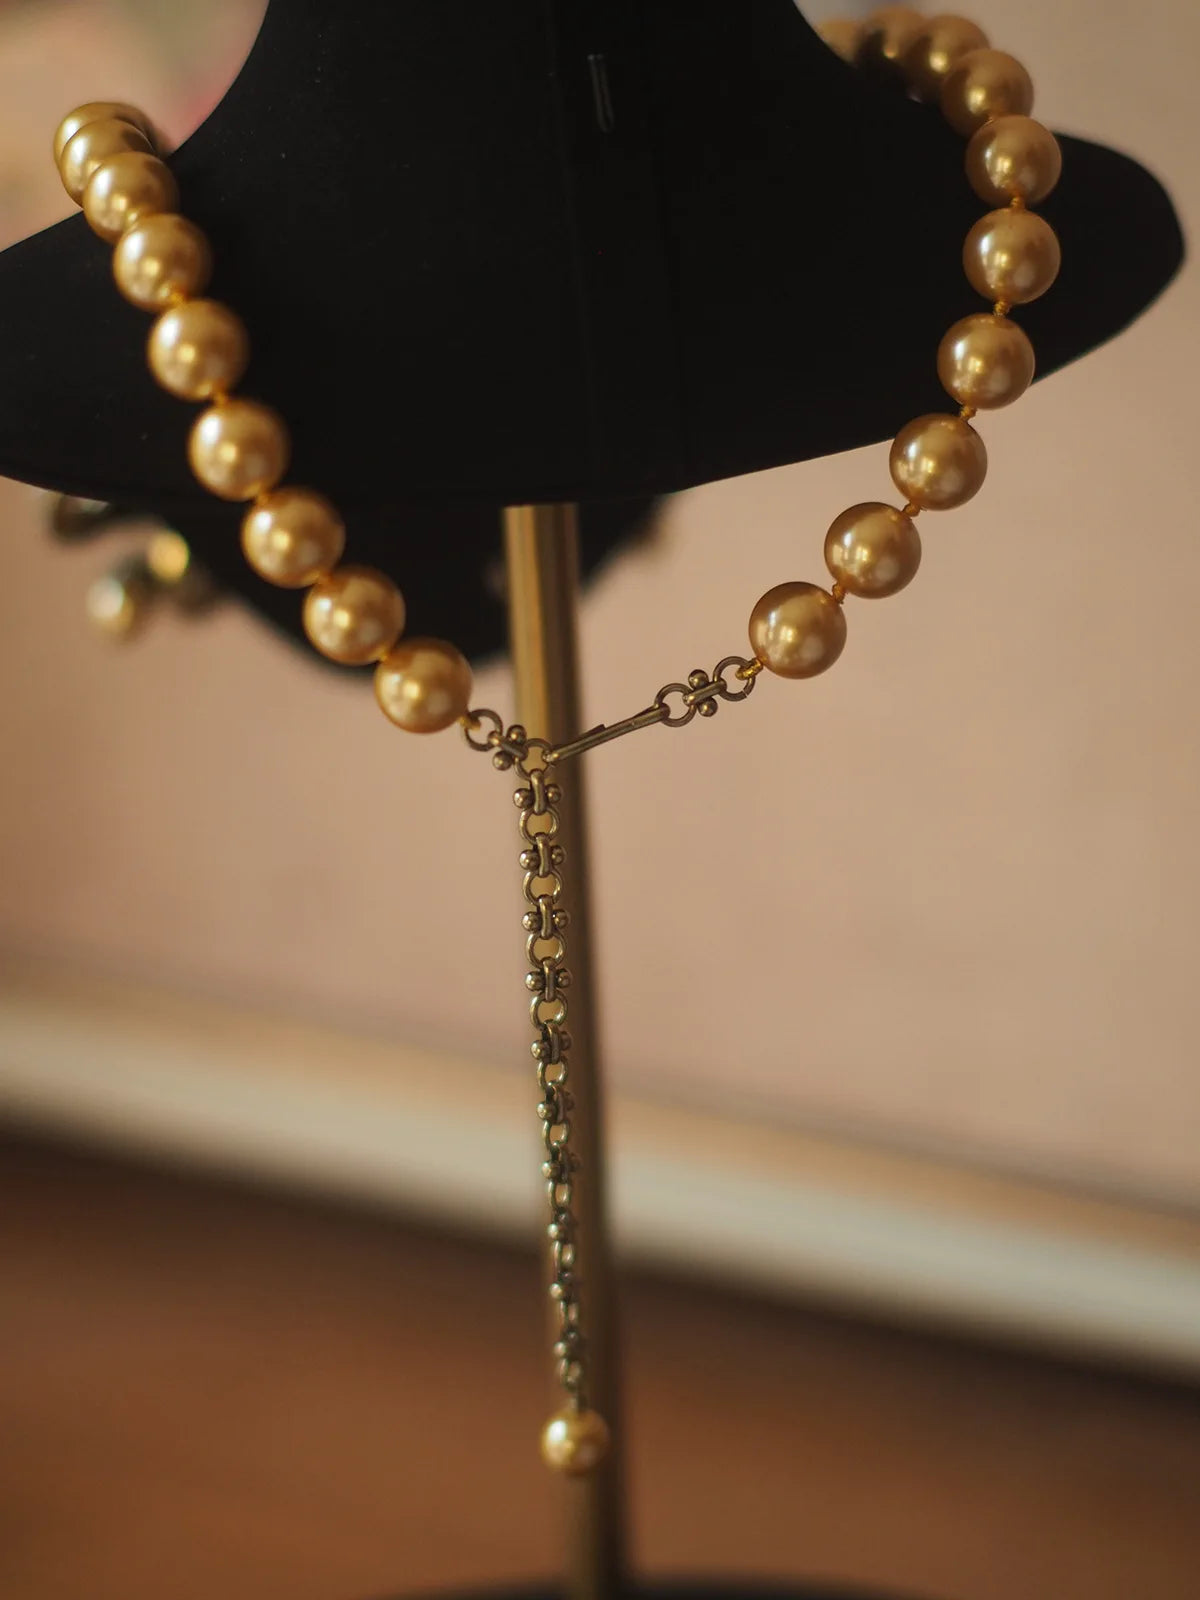 Magnificent Lion Shaped Vintage Pearl Necklace - Unique Fashion Statement